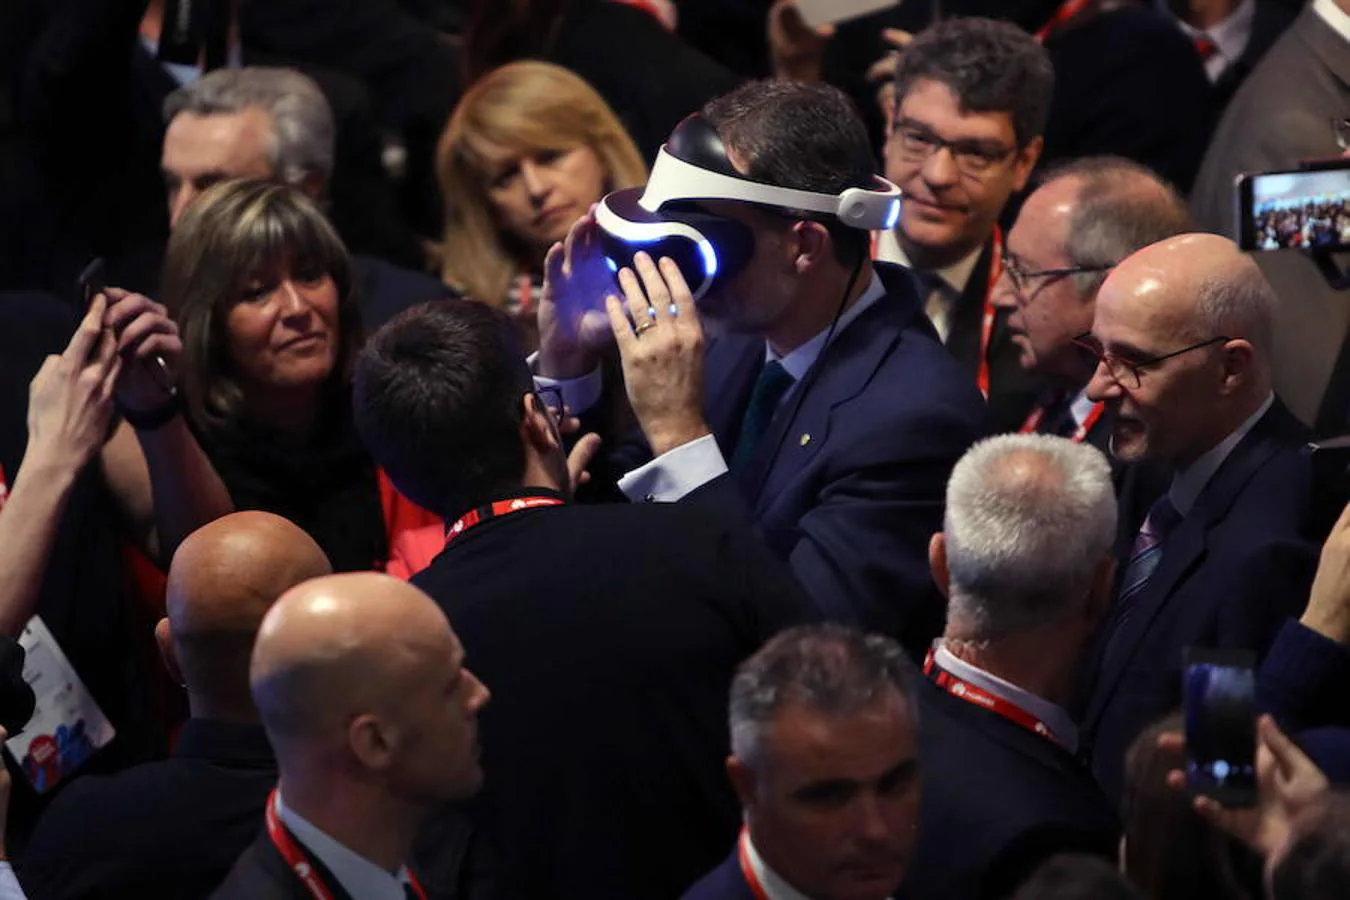 El Rey Felipe VI se ajusta unas gafas de realidad virtual durante la inauguración del MWC (Mobile World Congress), la mayor cita mundial de la tecnología móvil, que se celebra desde hoy y hasta el próximo jueves. 